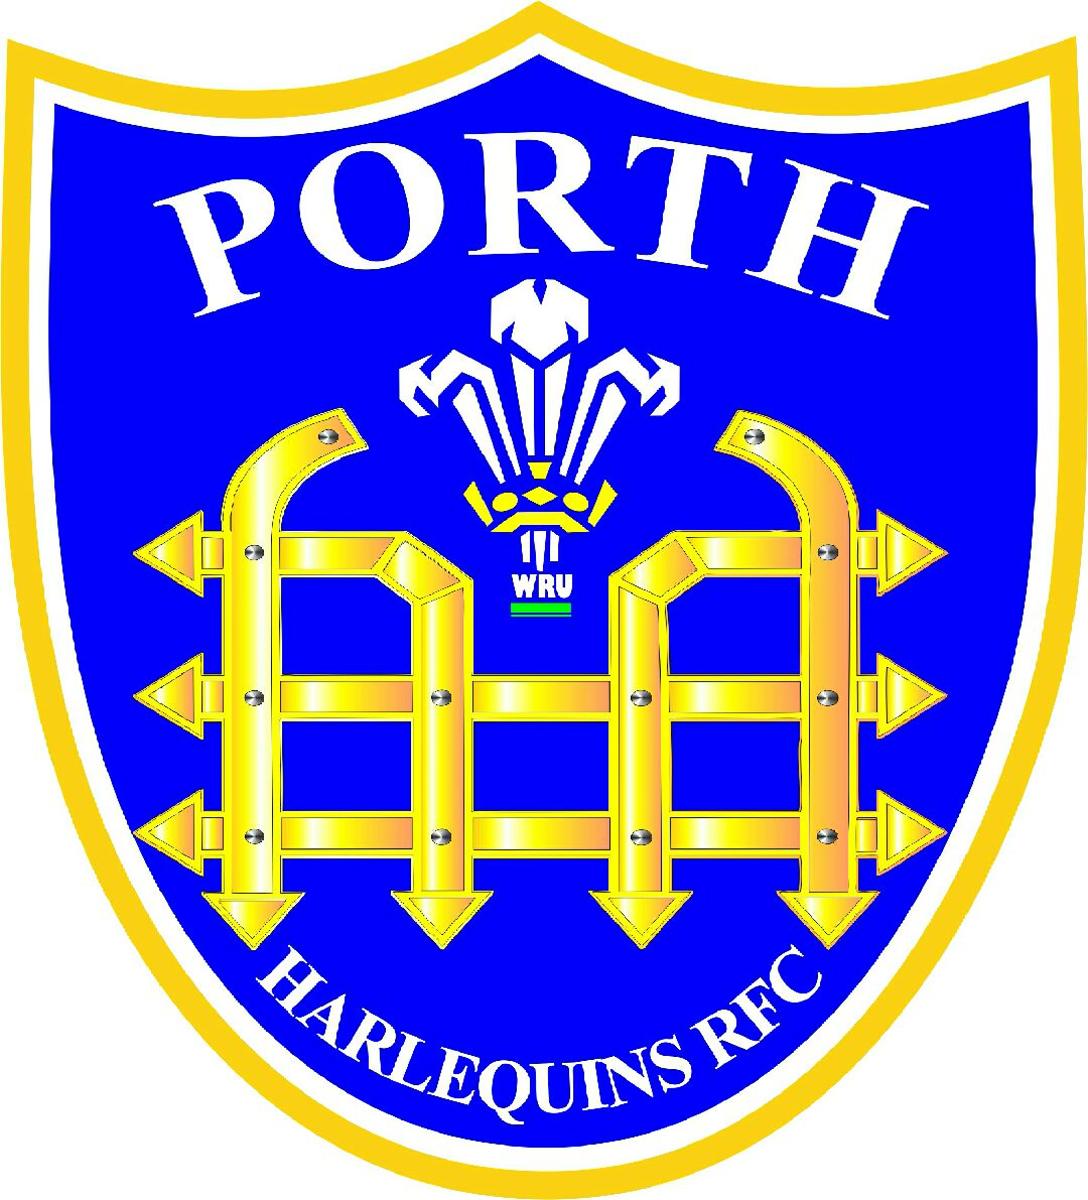 Porth Harlequins RFC